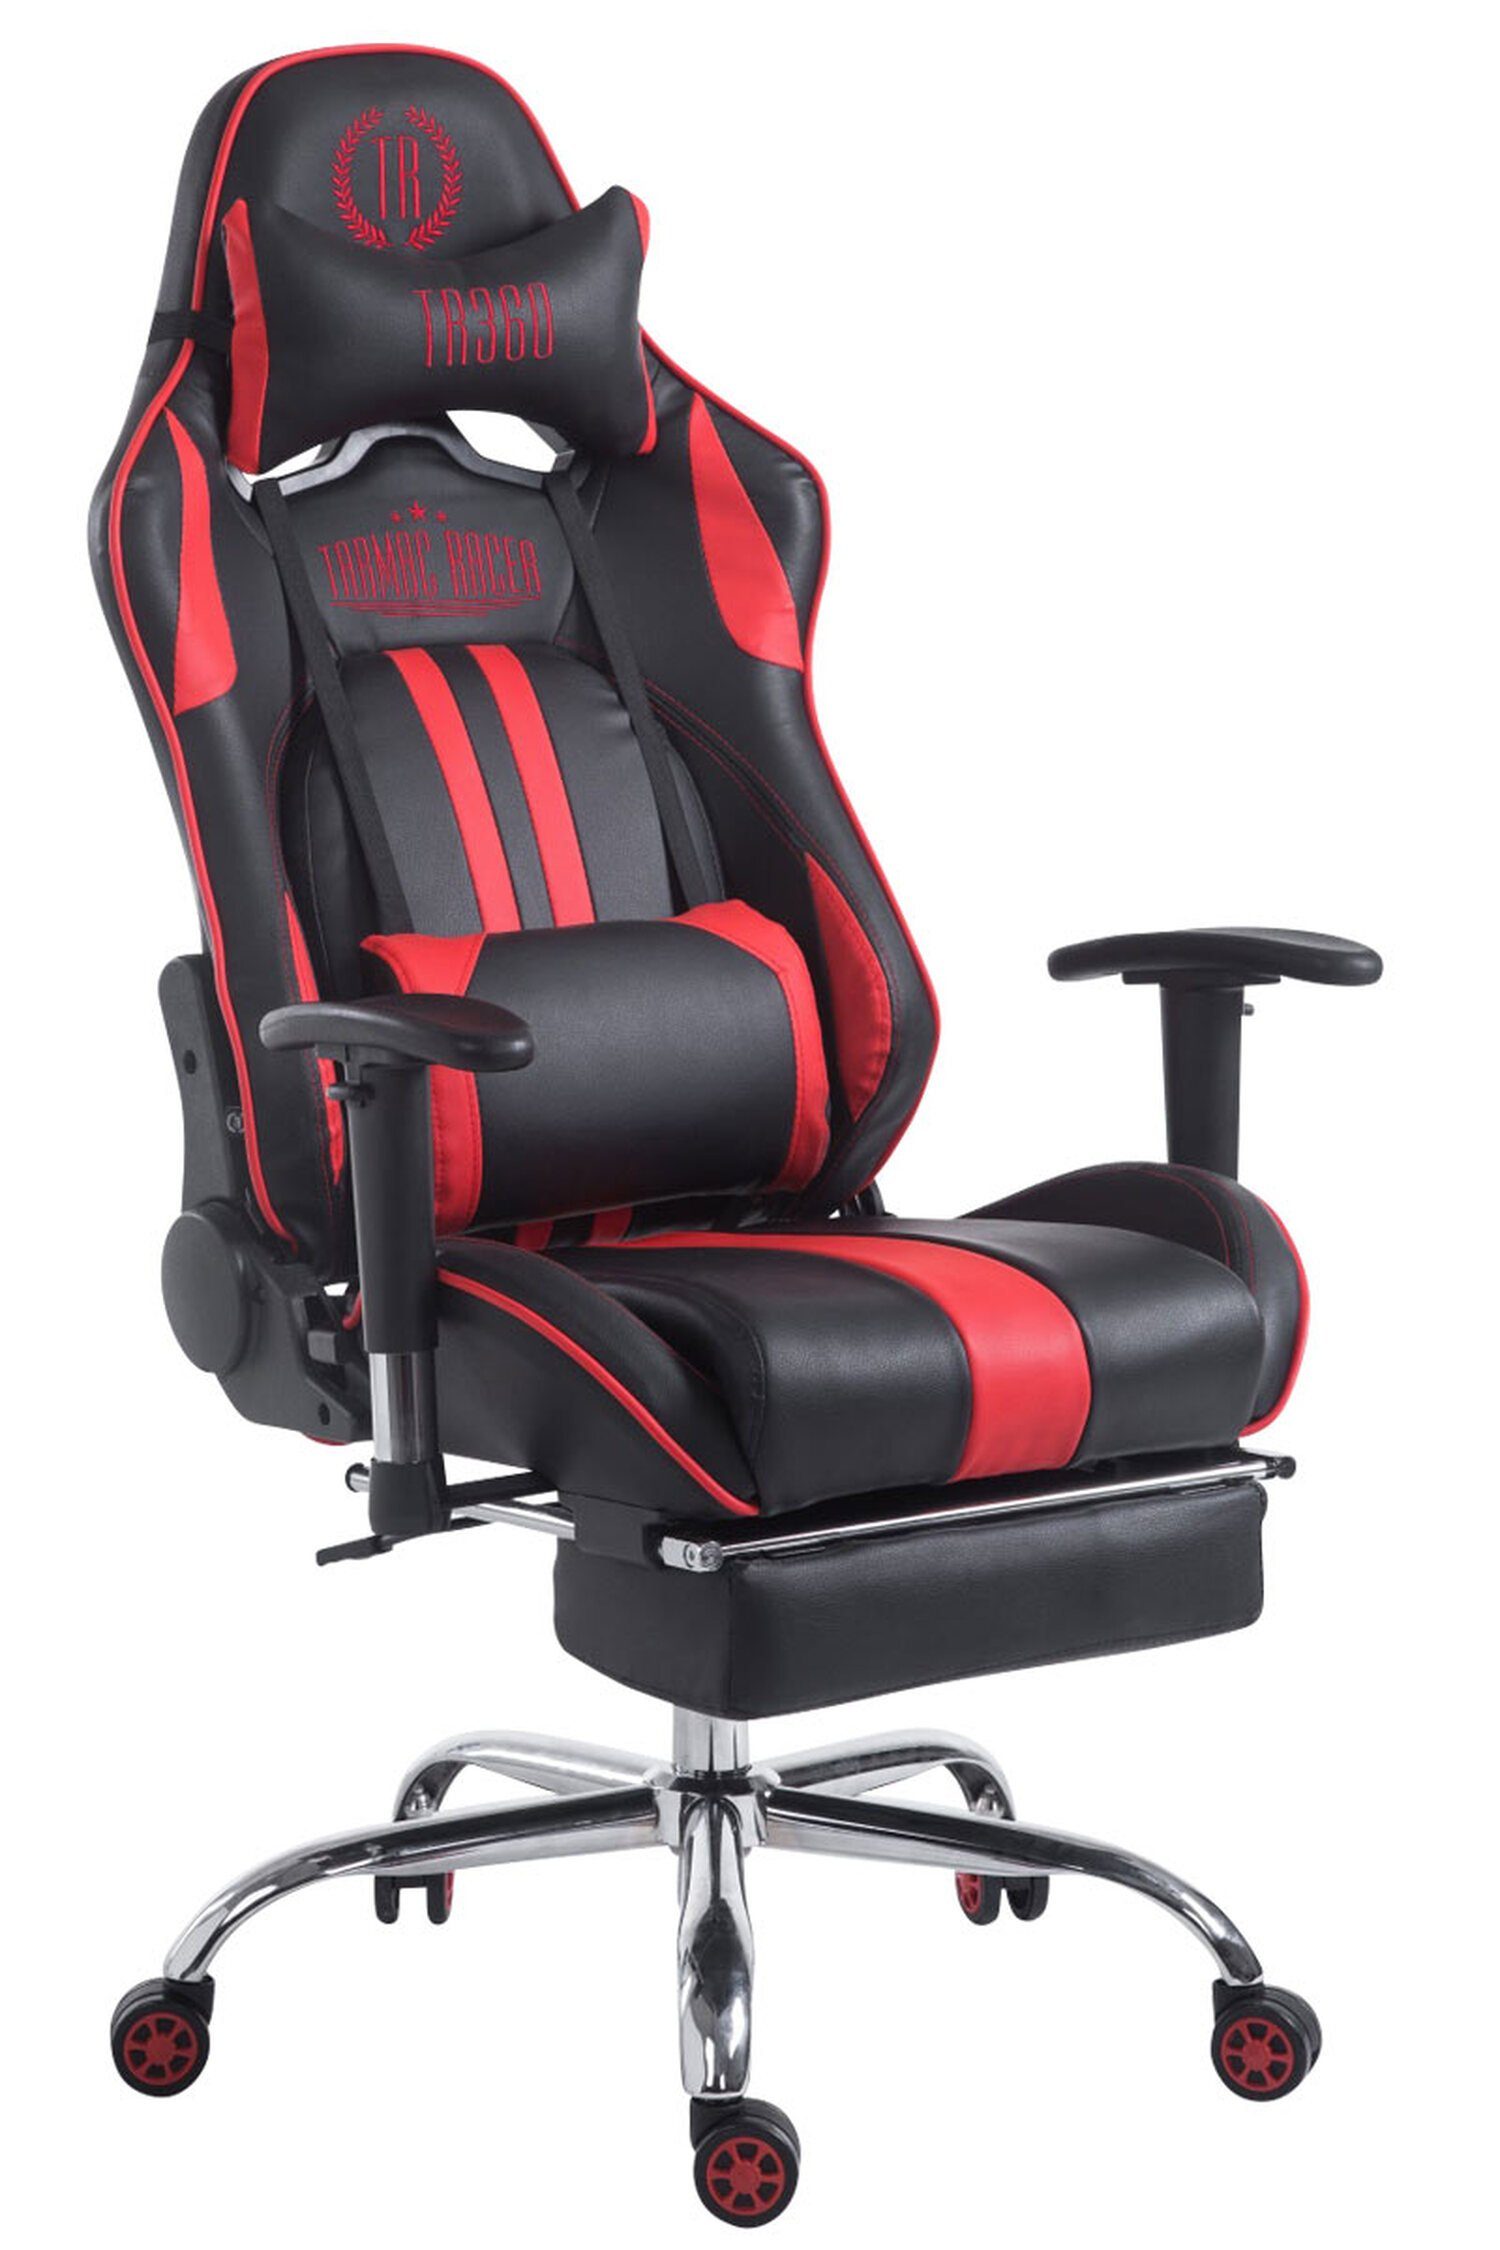 TPFLiving Gaming-Stuhl Limitless-2 mit bequemer Rückenlehne - höhenverstellbar - 360° drehbar (Schreibtischstuhl, Drehstuhl, Gamingstuhl, Racingstuhl, Chefsessel), Gestell: Metall chrom - Sitzfläche: Kunstleder schwarz/rot